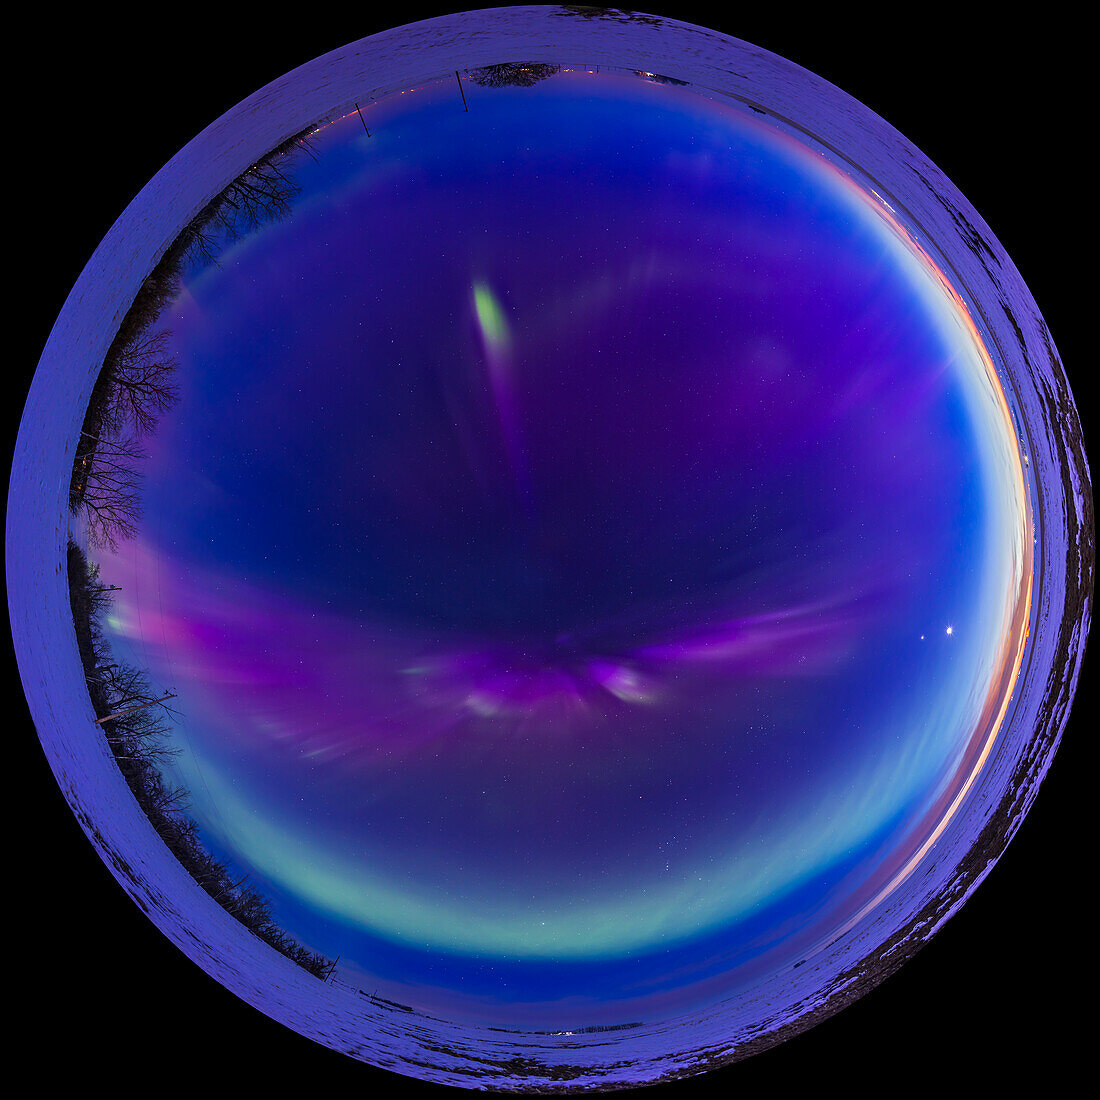 Ein 360°-Fischaugen-Panorama der großen Aurora zur Tagundnachtgleiche am 23. März 2023, wobei die Aurora bereits hell war, als sich der Himmel in der Dämmerung verdunkelte. Die Kp-Werte erreichten in dieser Nacht einen Spitzenwert von Kp7.